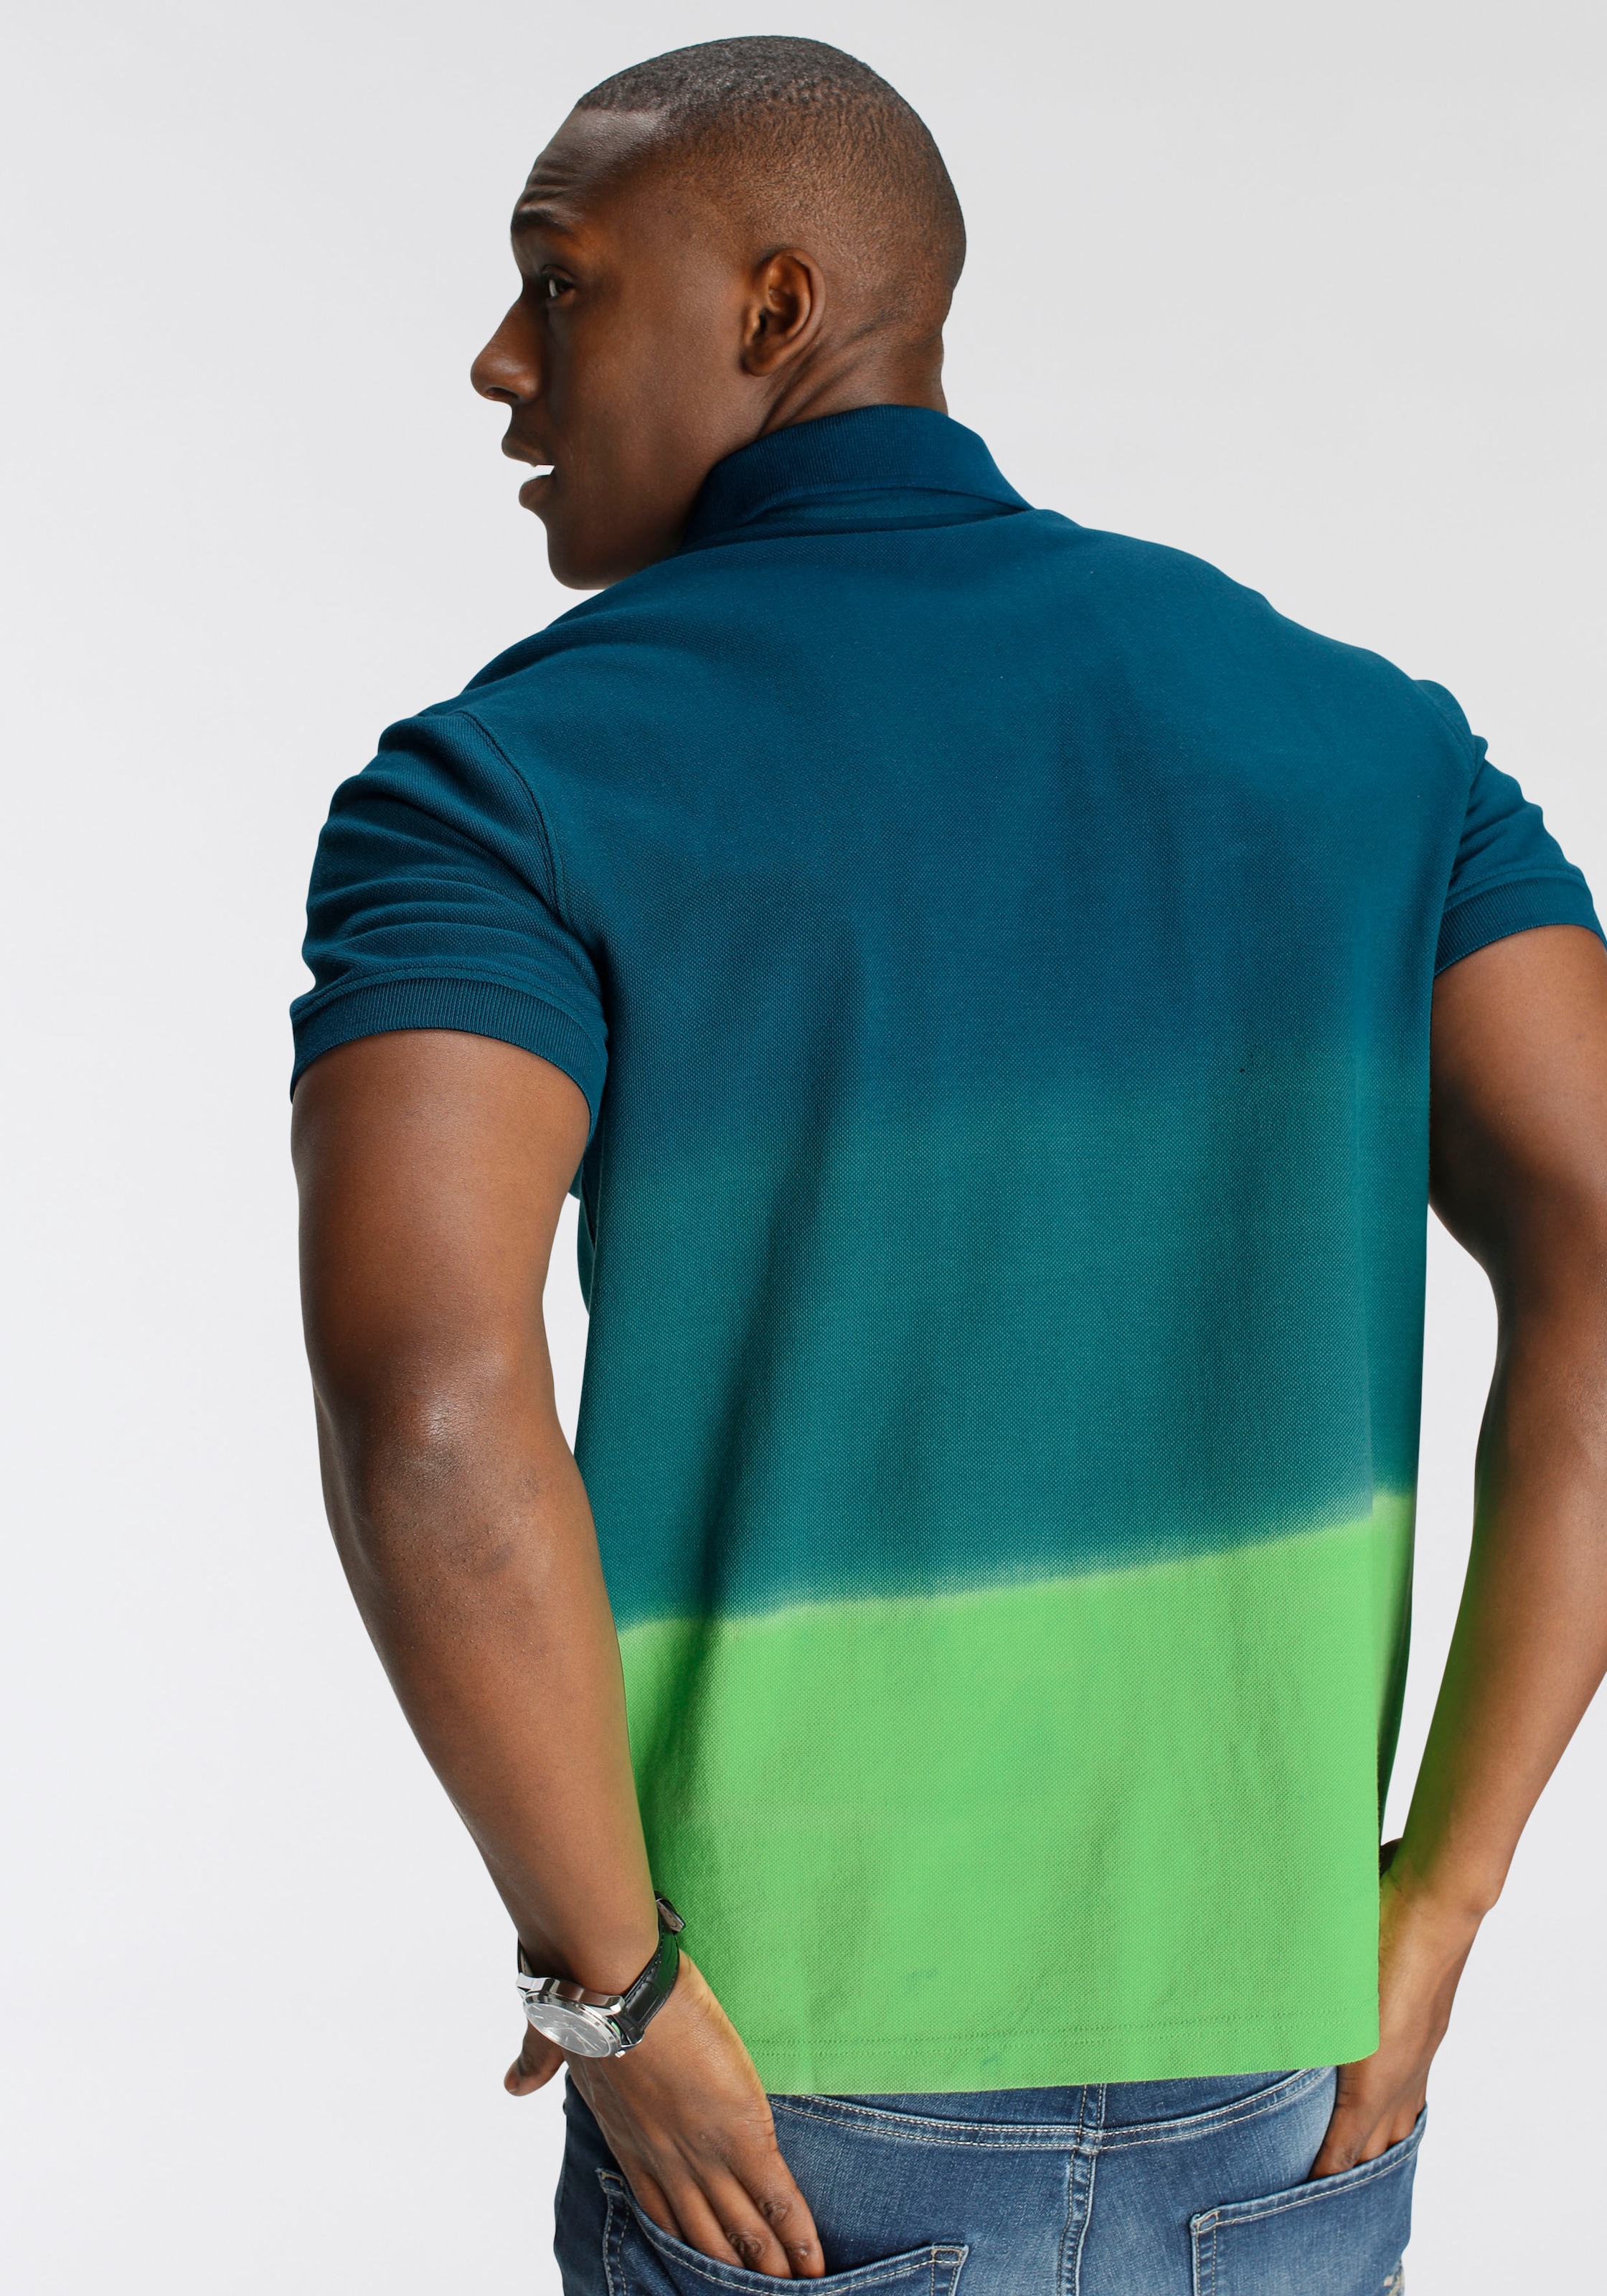 DELMAO Poloshirt, mit modischem Farbverlauf und Print- NEUE MARKE! bei ♕